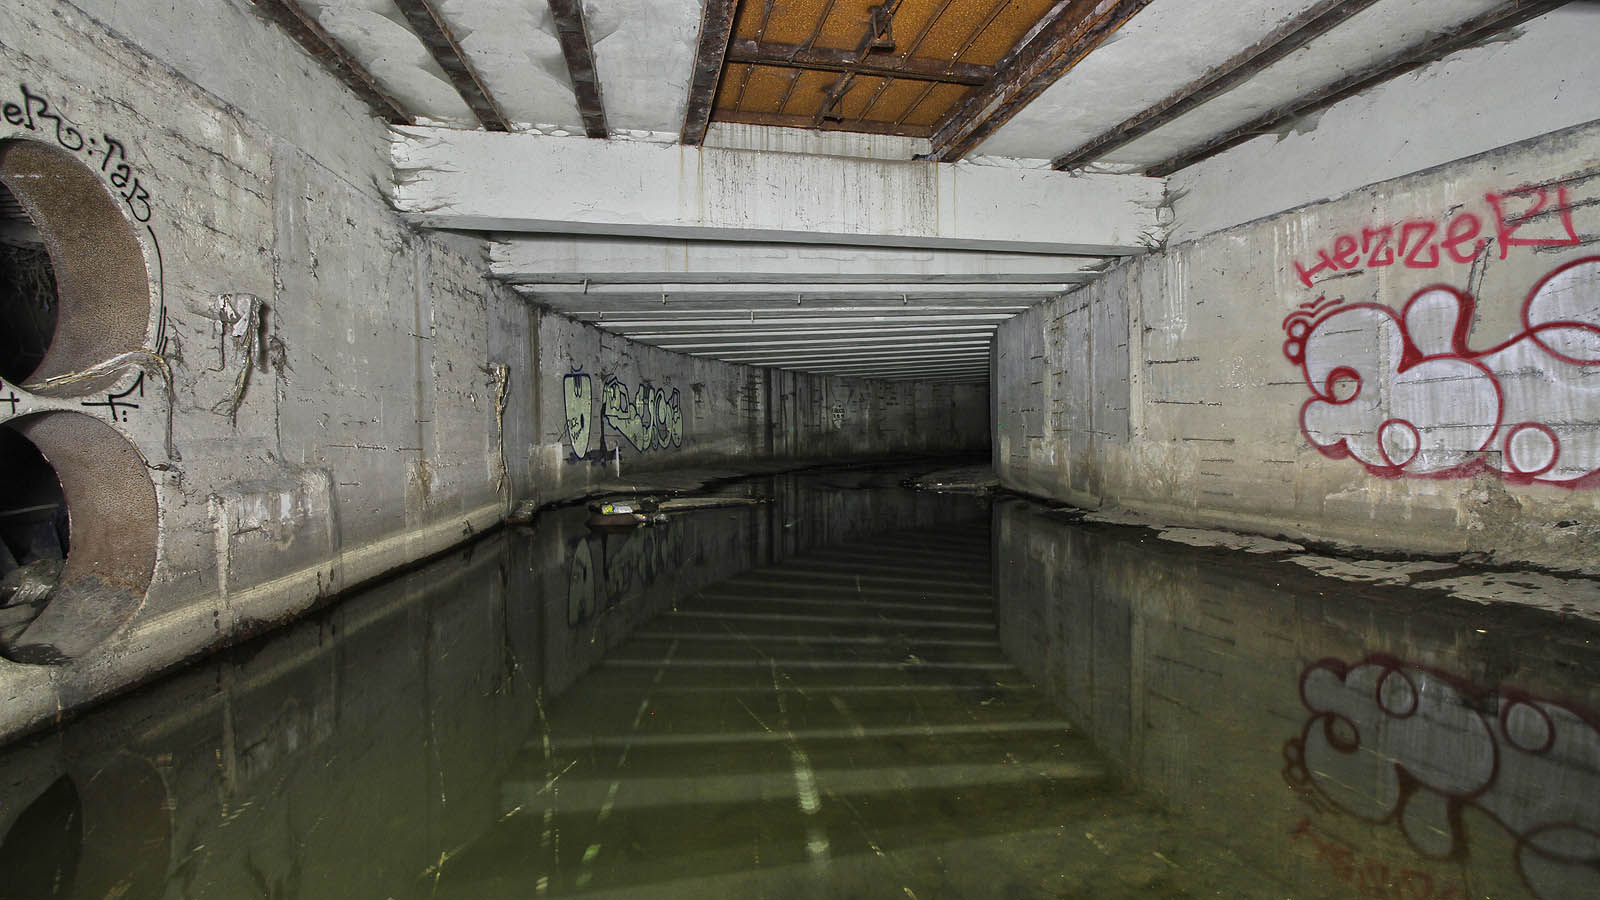 Pohled na nejvyšší část tunelu Botiče, zpod železniční trati. Vlevo je vidět ocelové průchodky spojující tunel se systémem dešťové kanalizace.